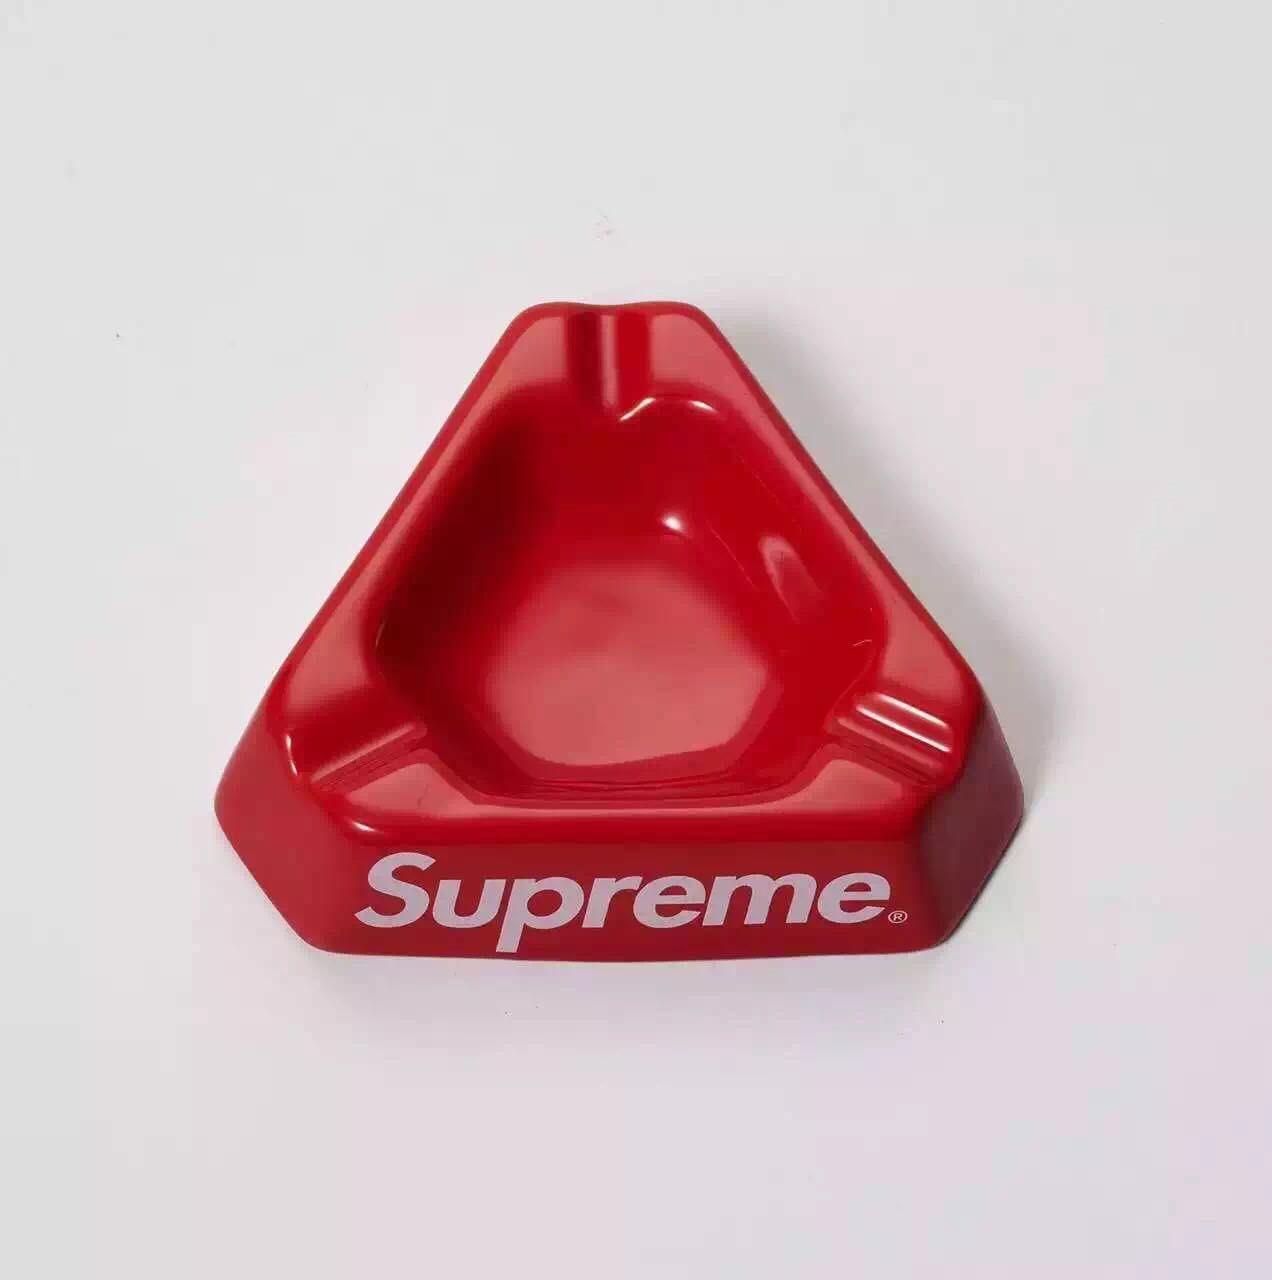 White Triangle in Red Box Logo - USD 15.58] Spot Supreme 15fw Ceramic Ashtray ceramic ashtray BOX ...